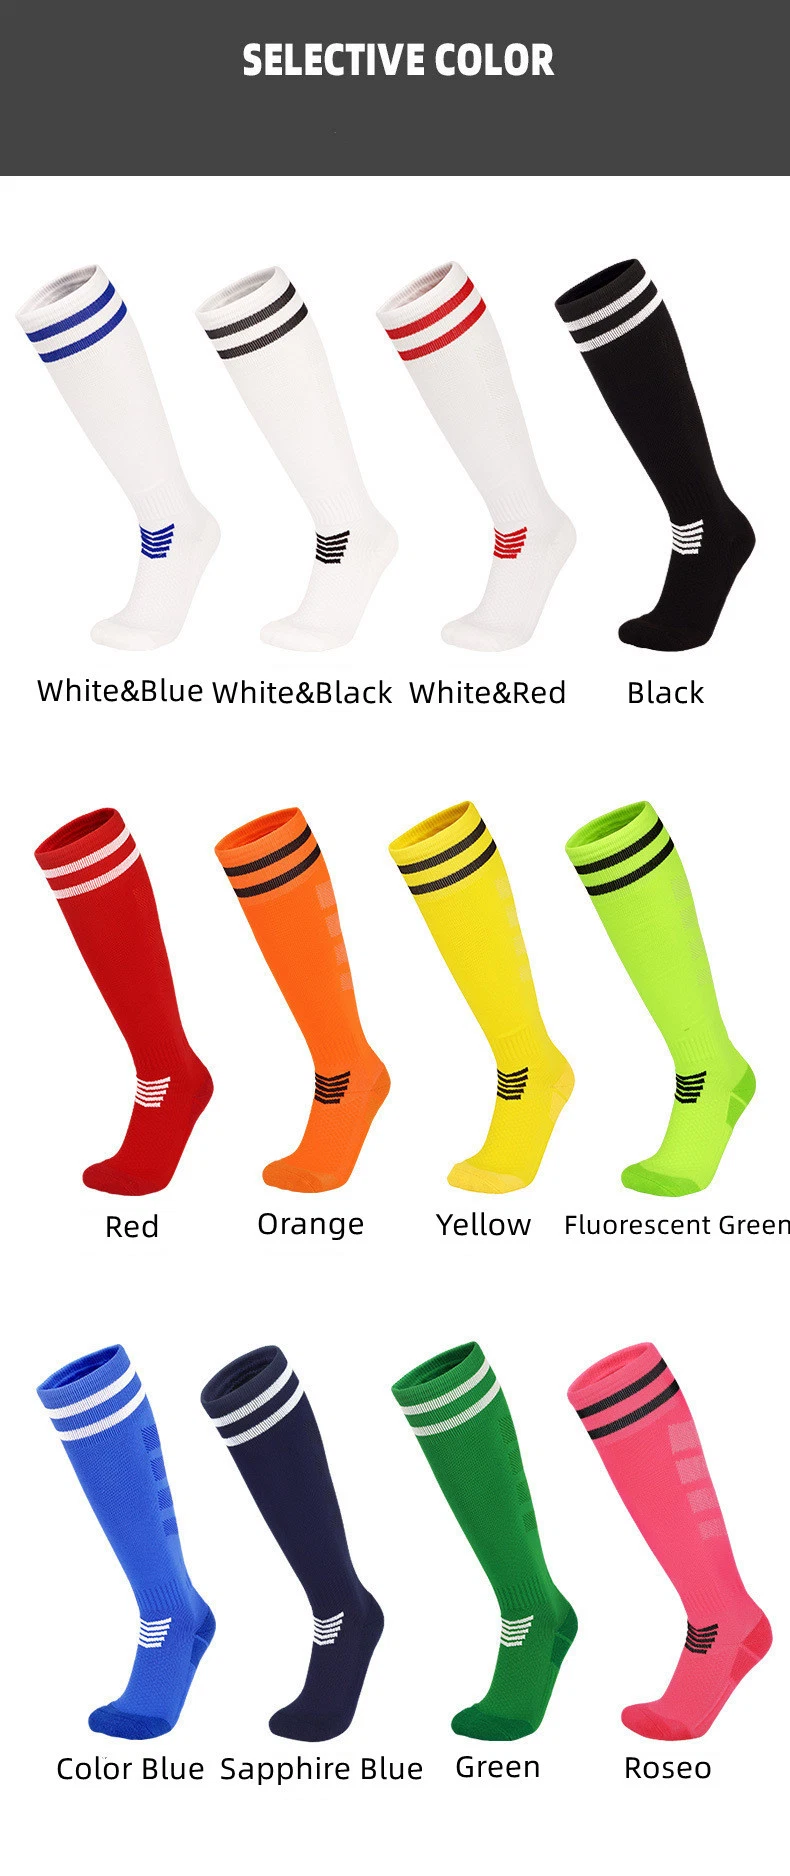 Football Socks Long Tube Leggings Cotton Socks Stocking Clothes Soccer Socks for Adult and Children for Sports